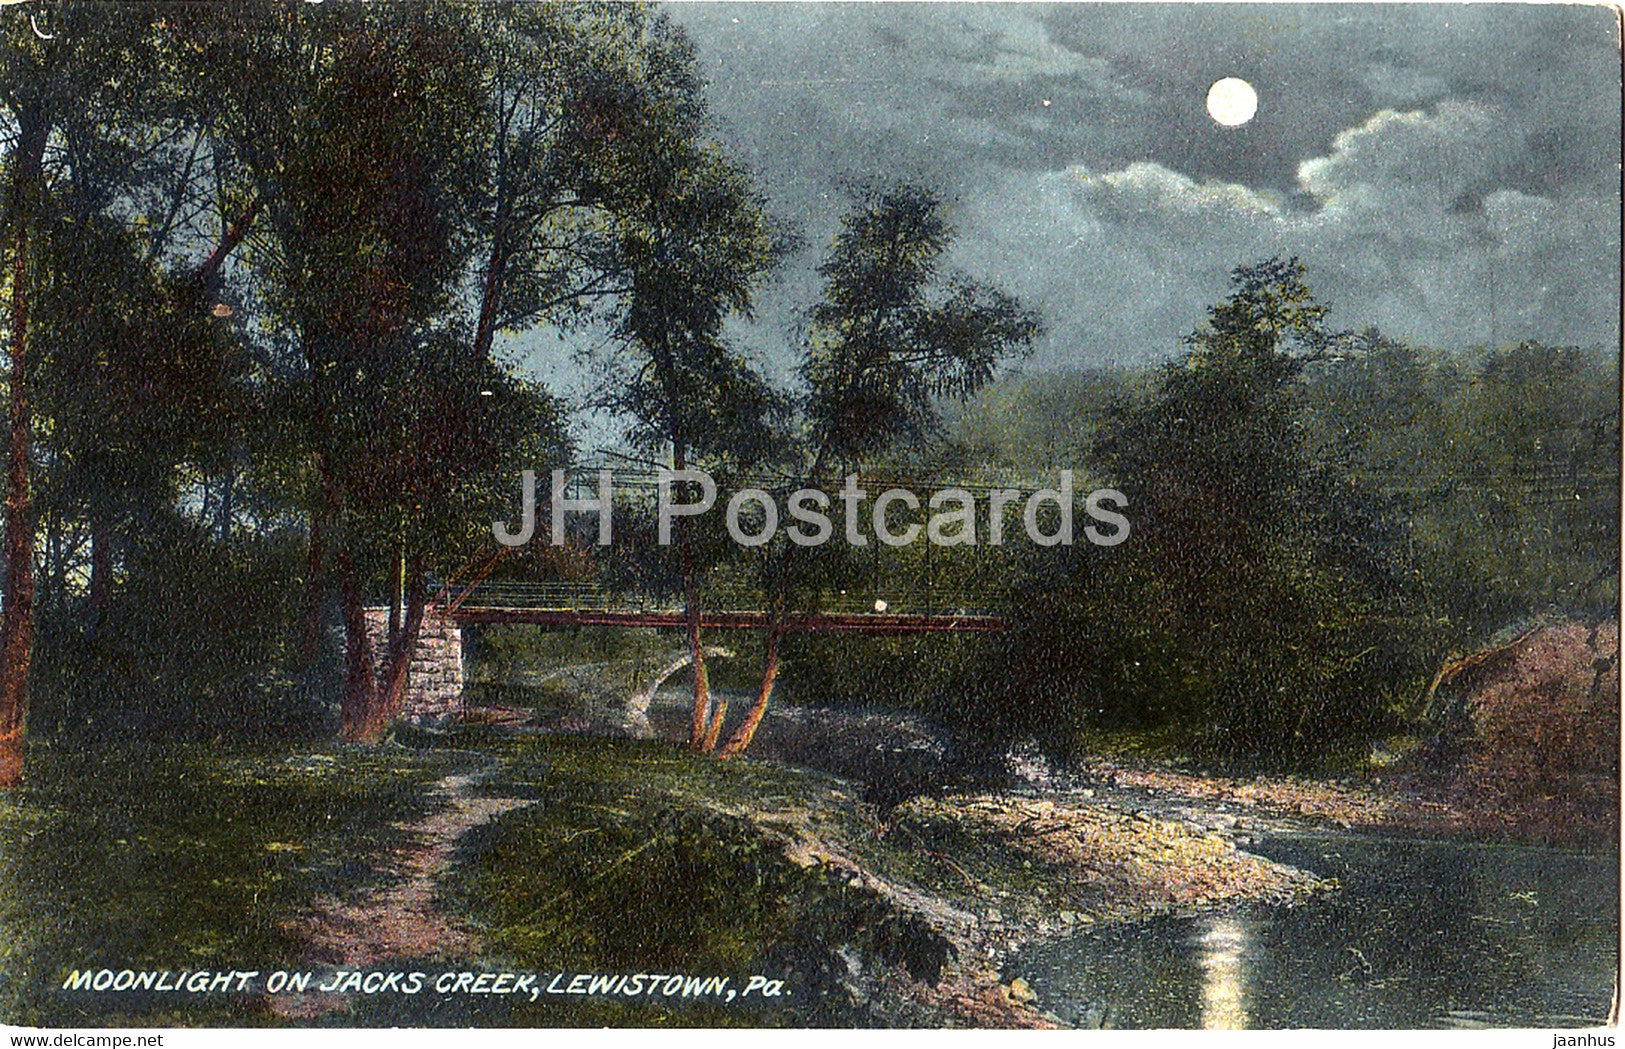 Lewistown - Moonlight on Jacks Creek - PA - 7353 - old postcard - United States - USA - unused - JH Postcards